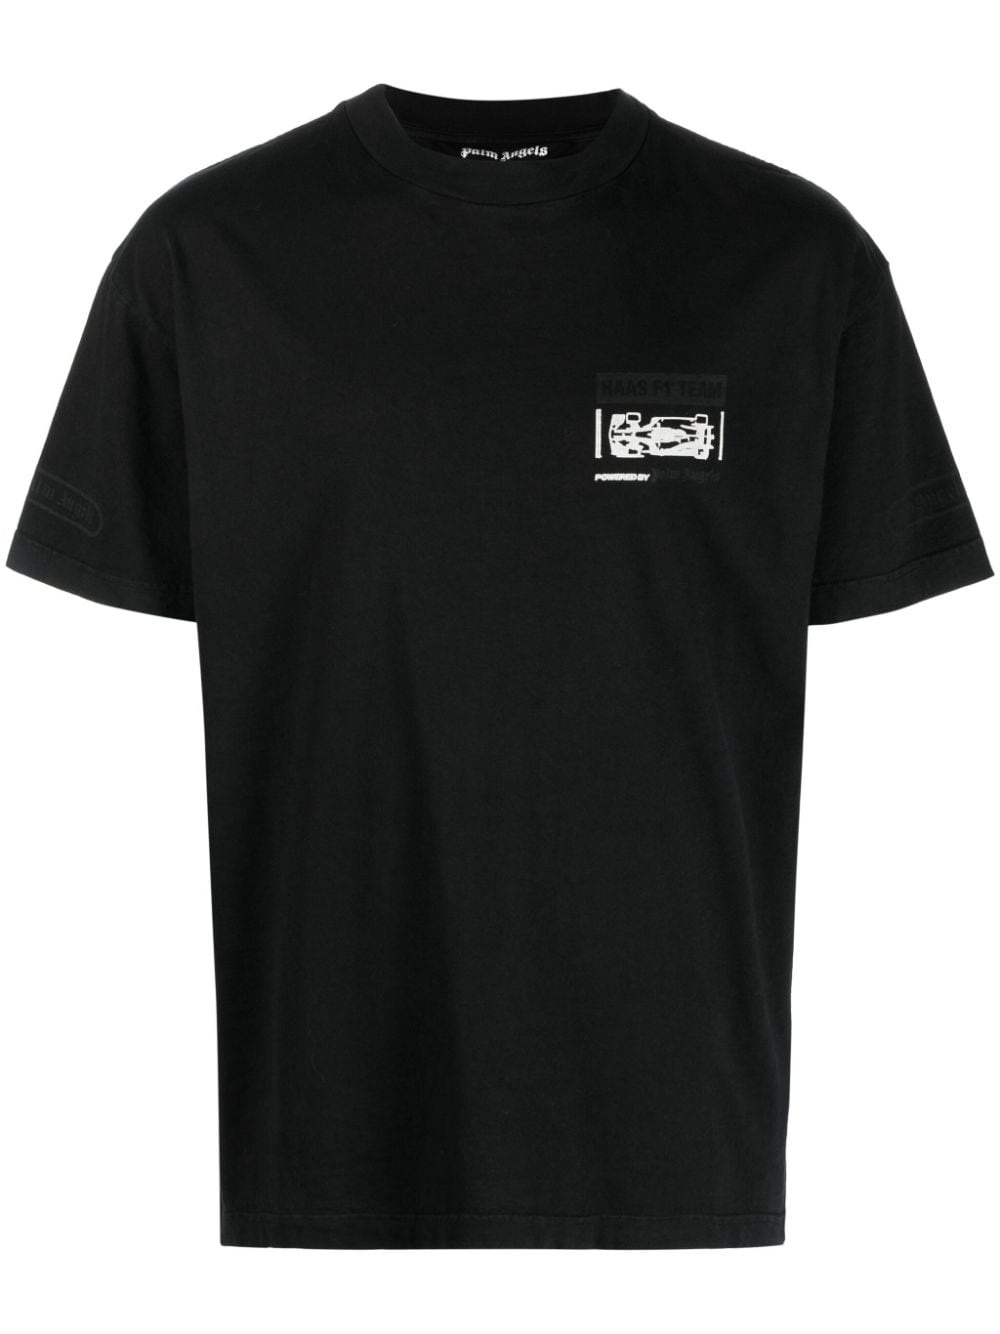 x MoneyGram Haas F1 Team T-shirt - 1